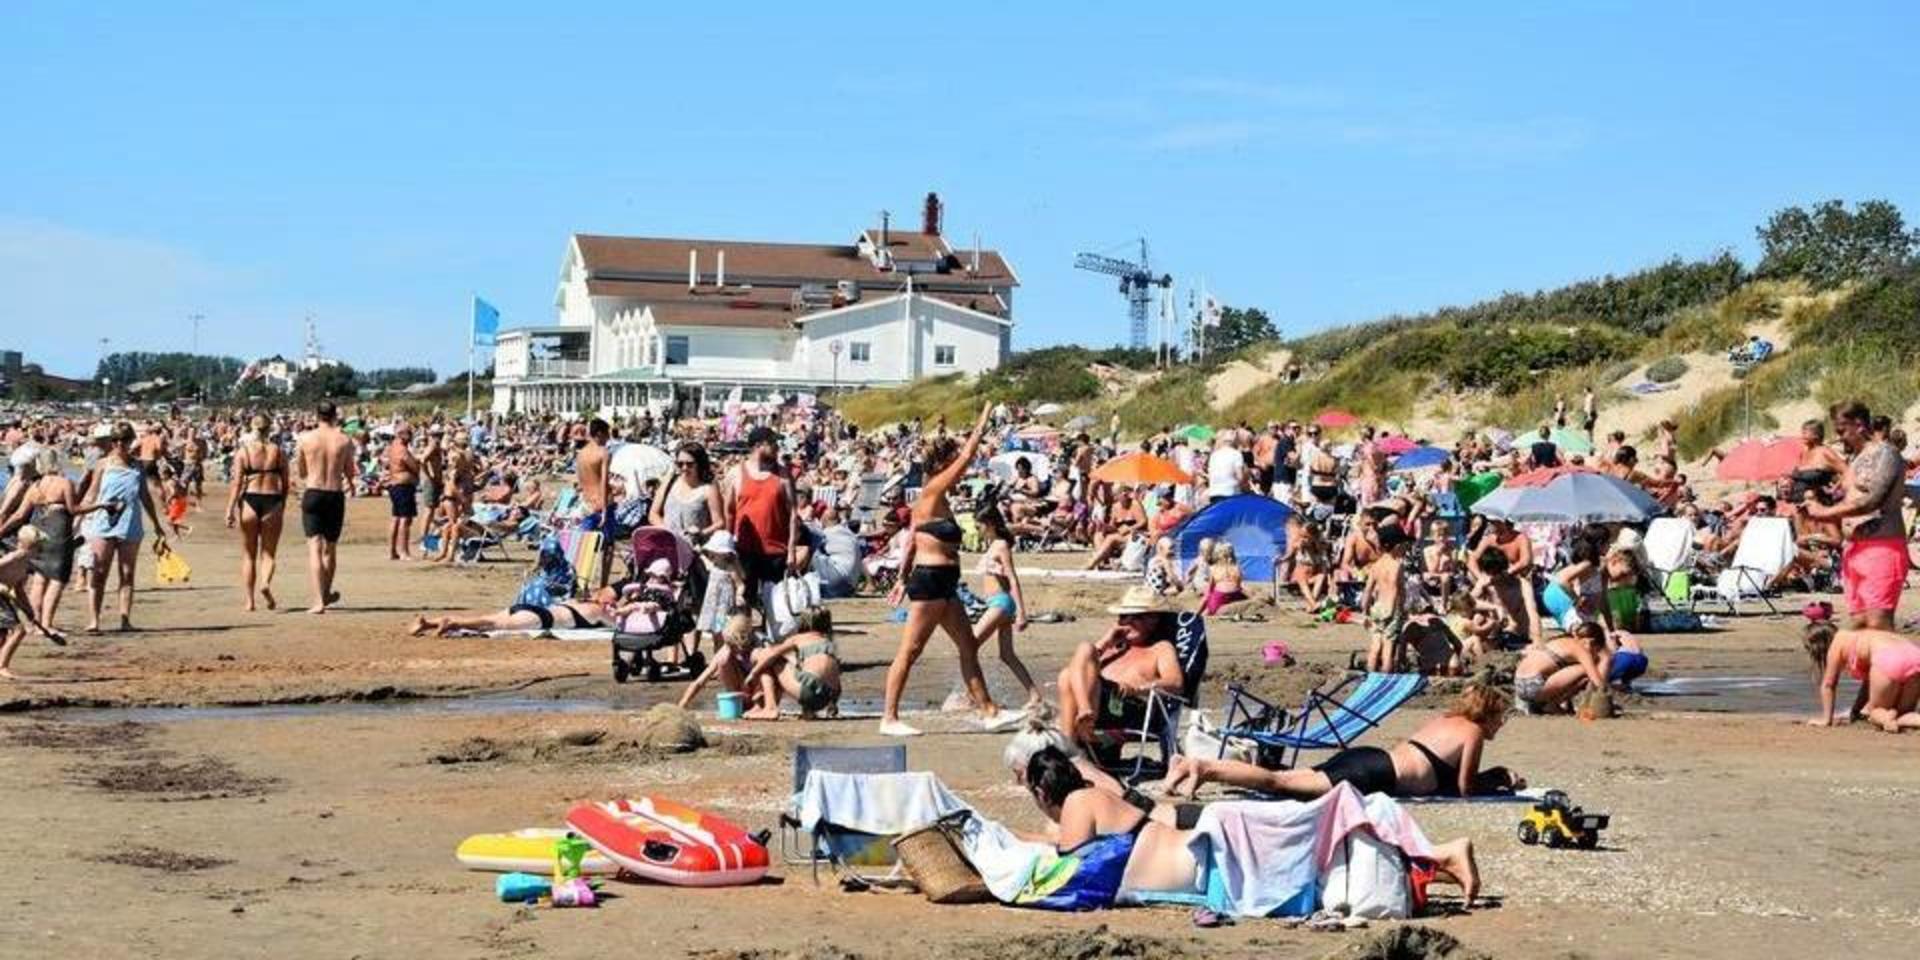 Skrea strand en varm sommardag under sommaren 2020.